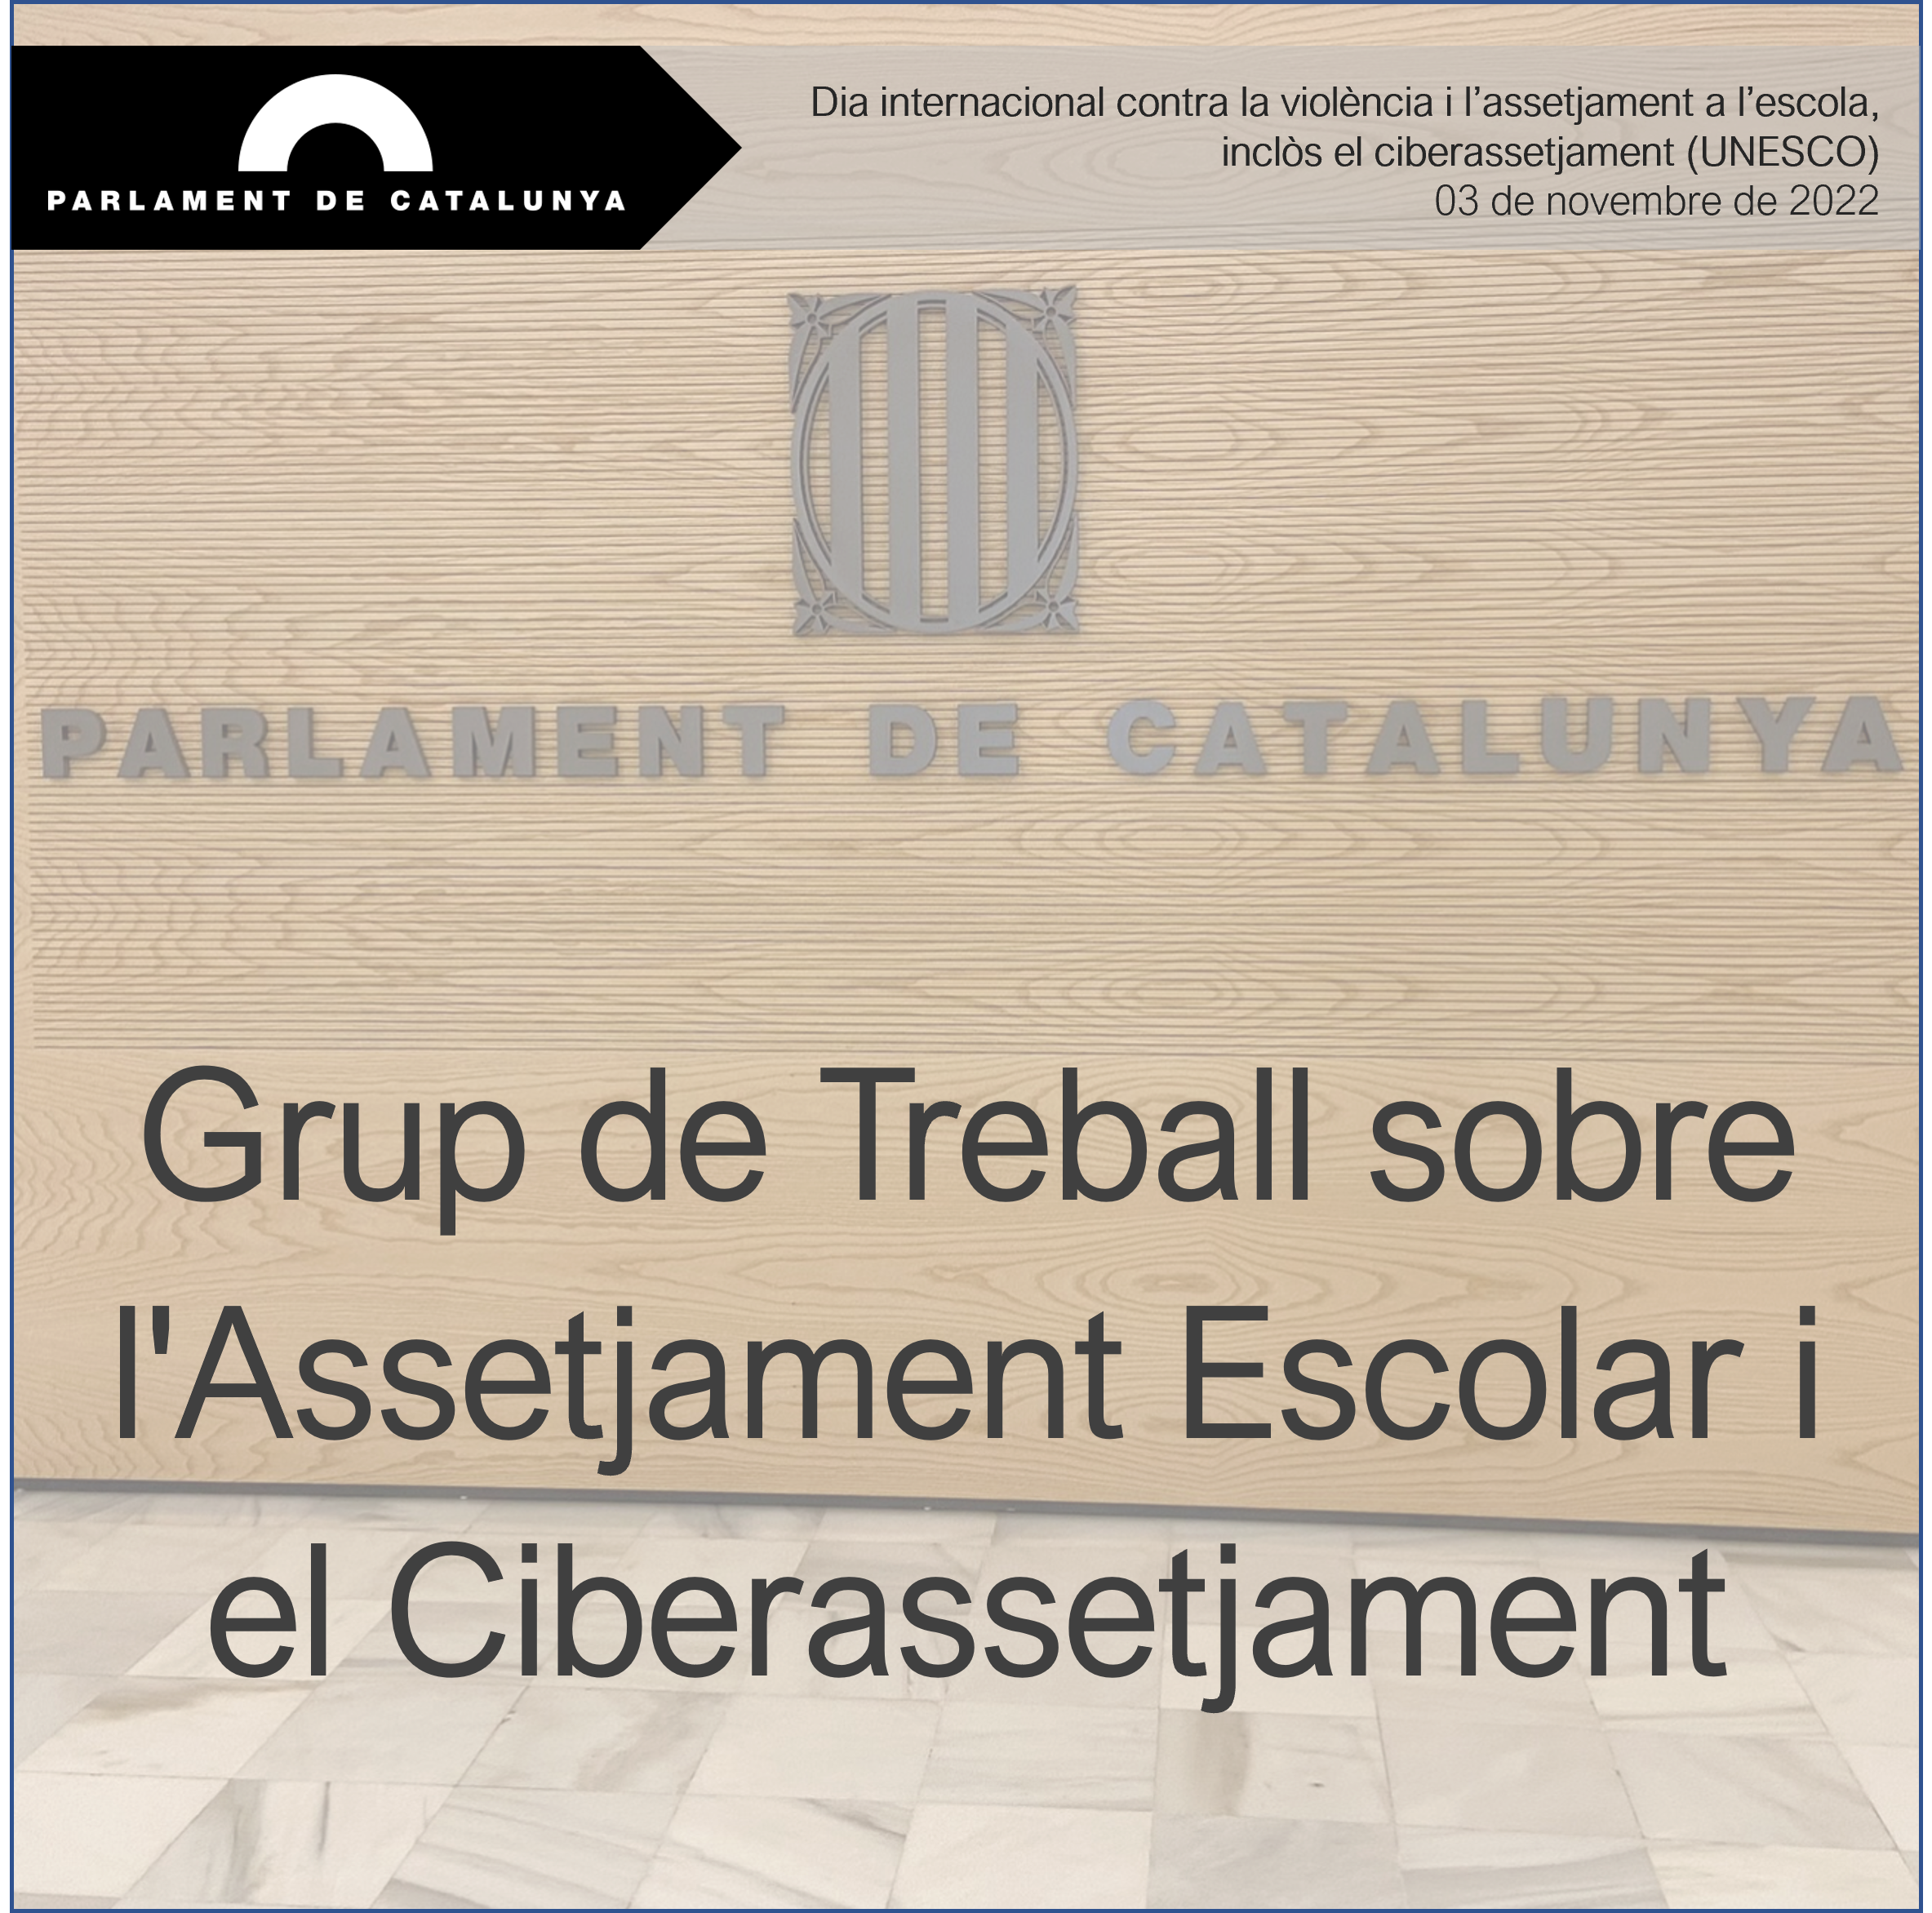 Comparecencia Grupo de Trabajo sobre el Acoso Escolar y el Ciberacoso (Parlament de Catalunya)